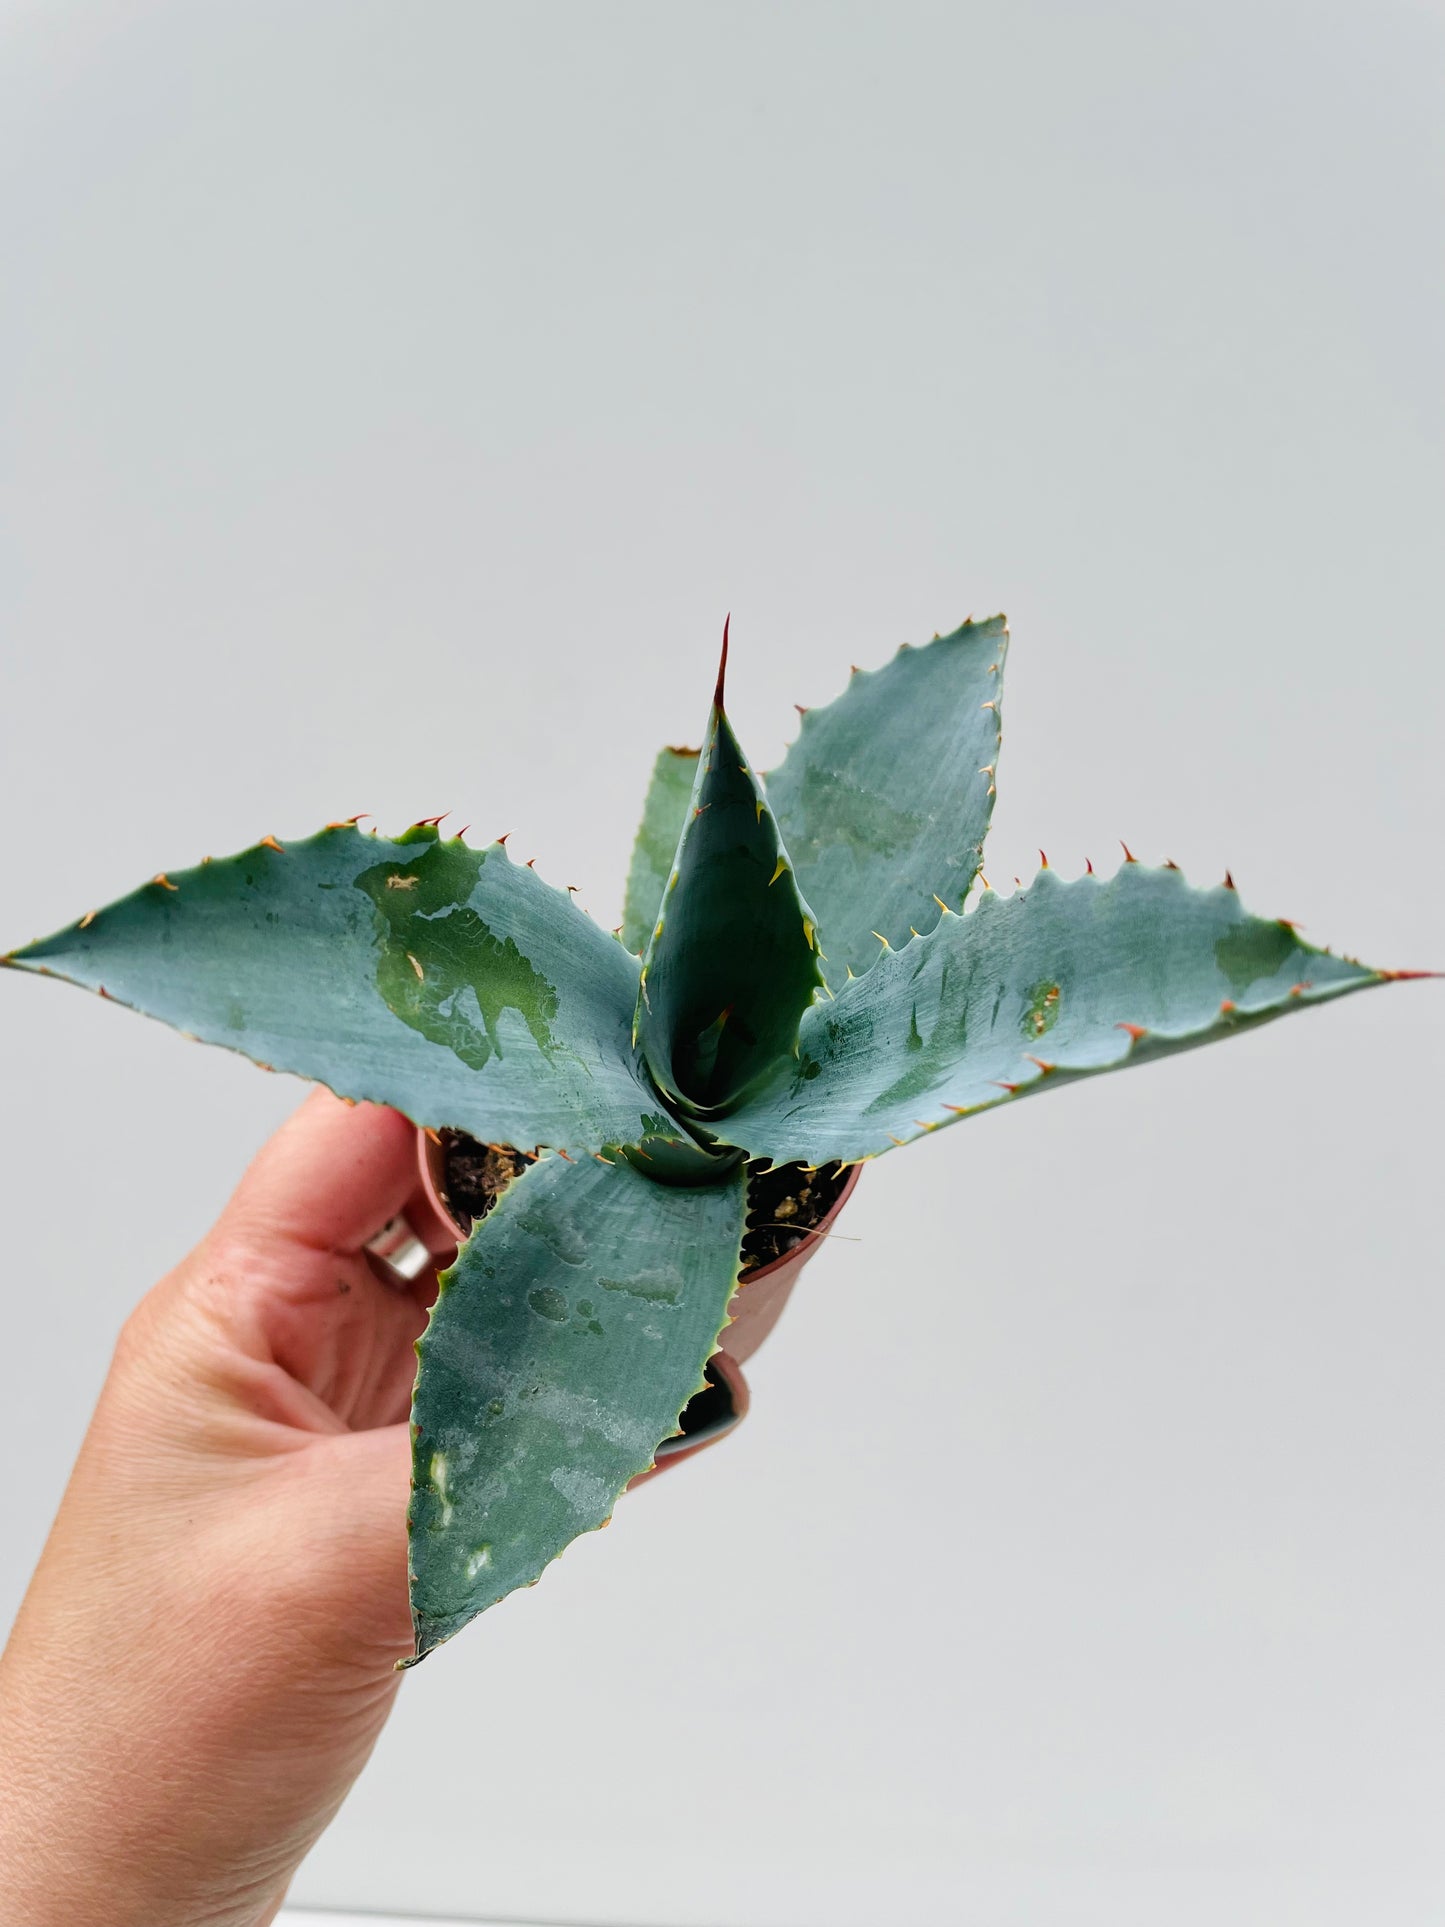 Bilde av Agave potatorum 5 cm potte-Spanne Plantesalg